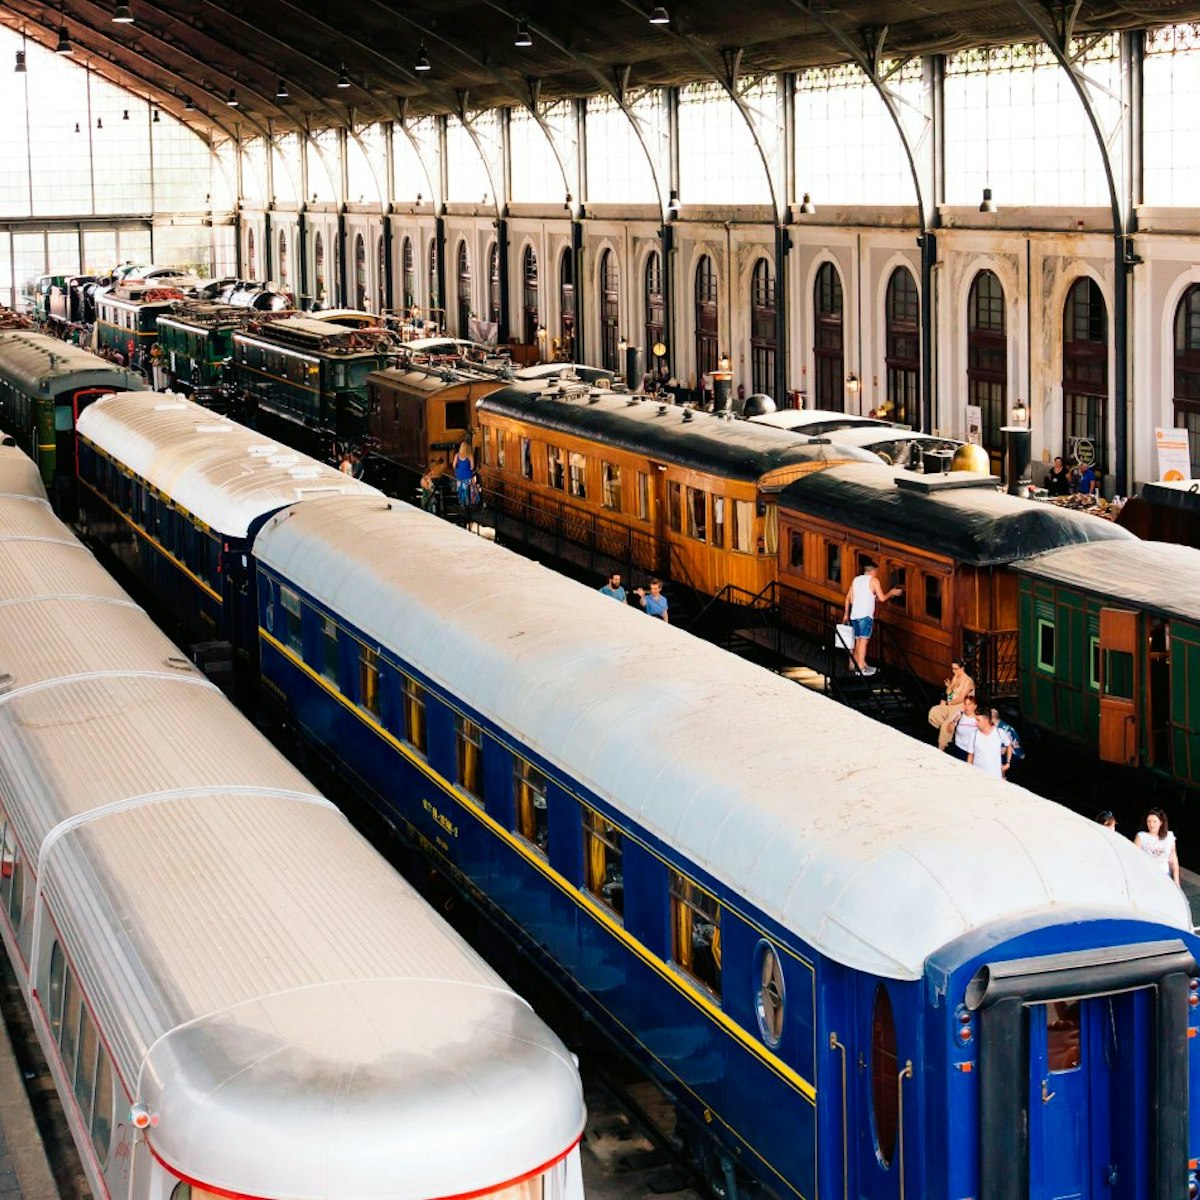 Old trains displayed at platforms at Mercado de Motores, El Museo del Ferrocarril.